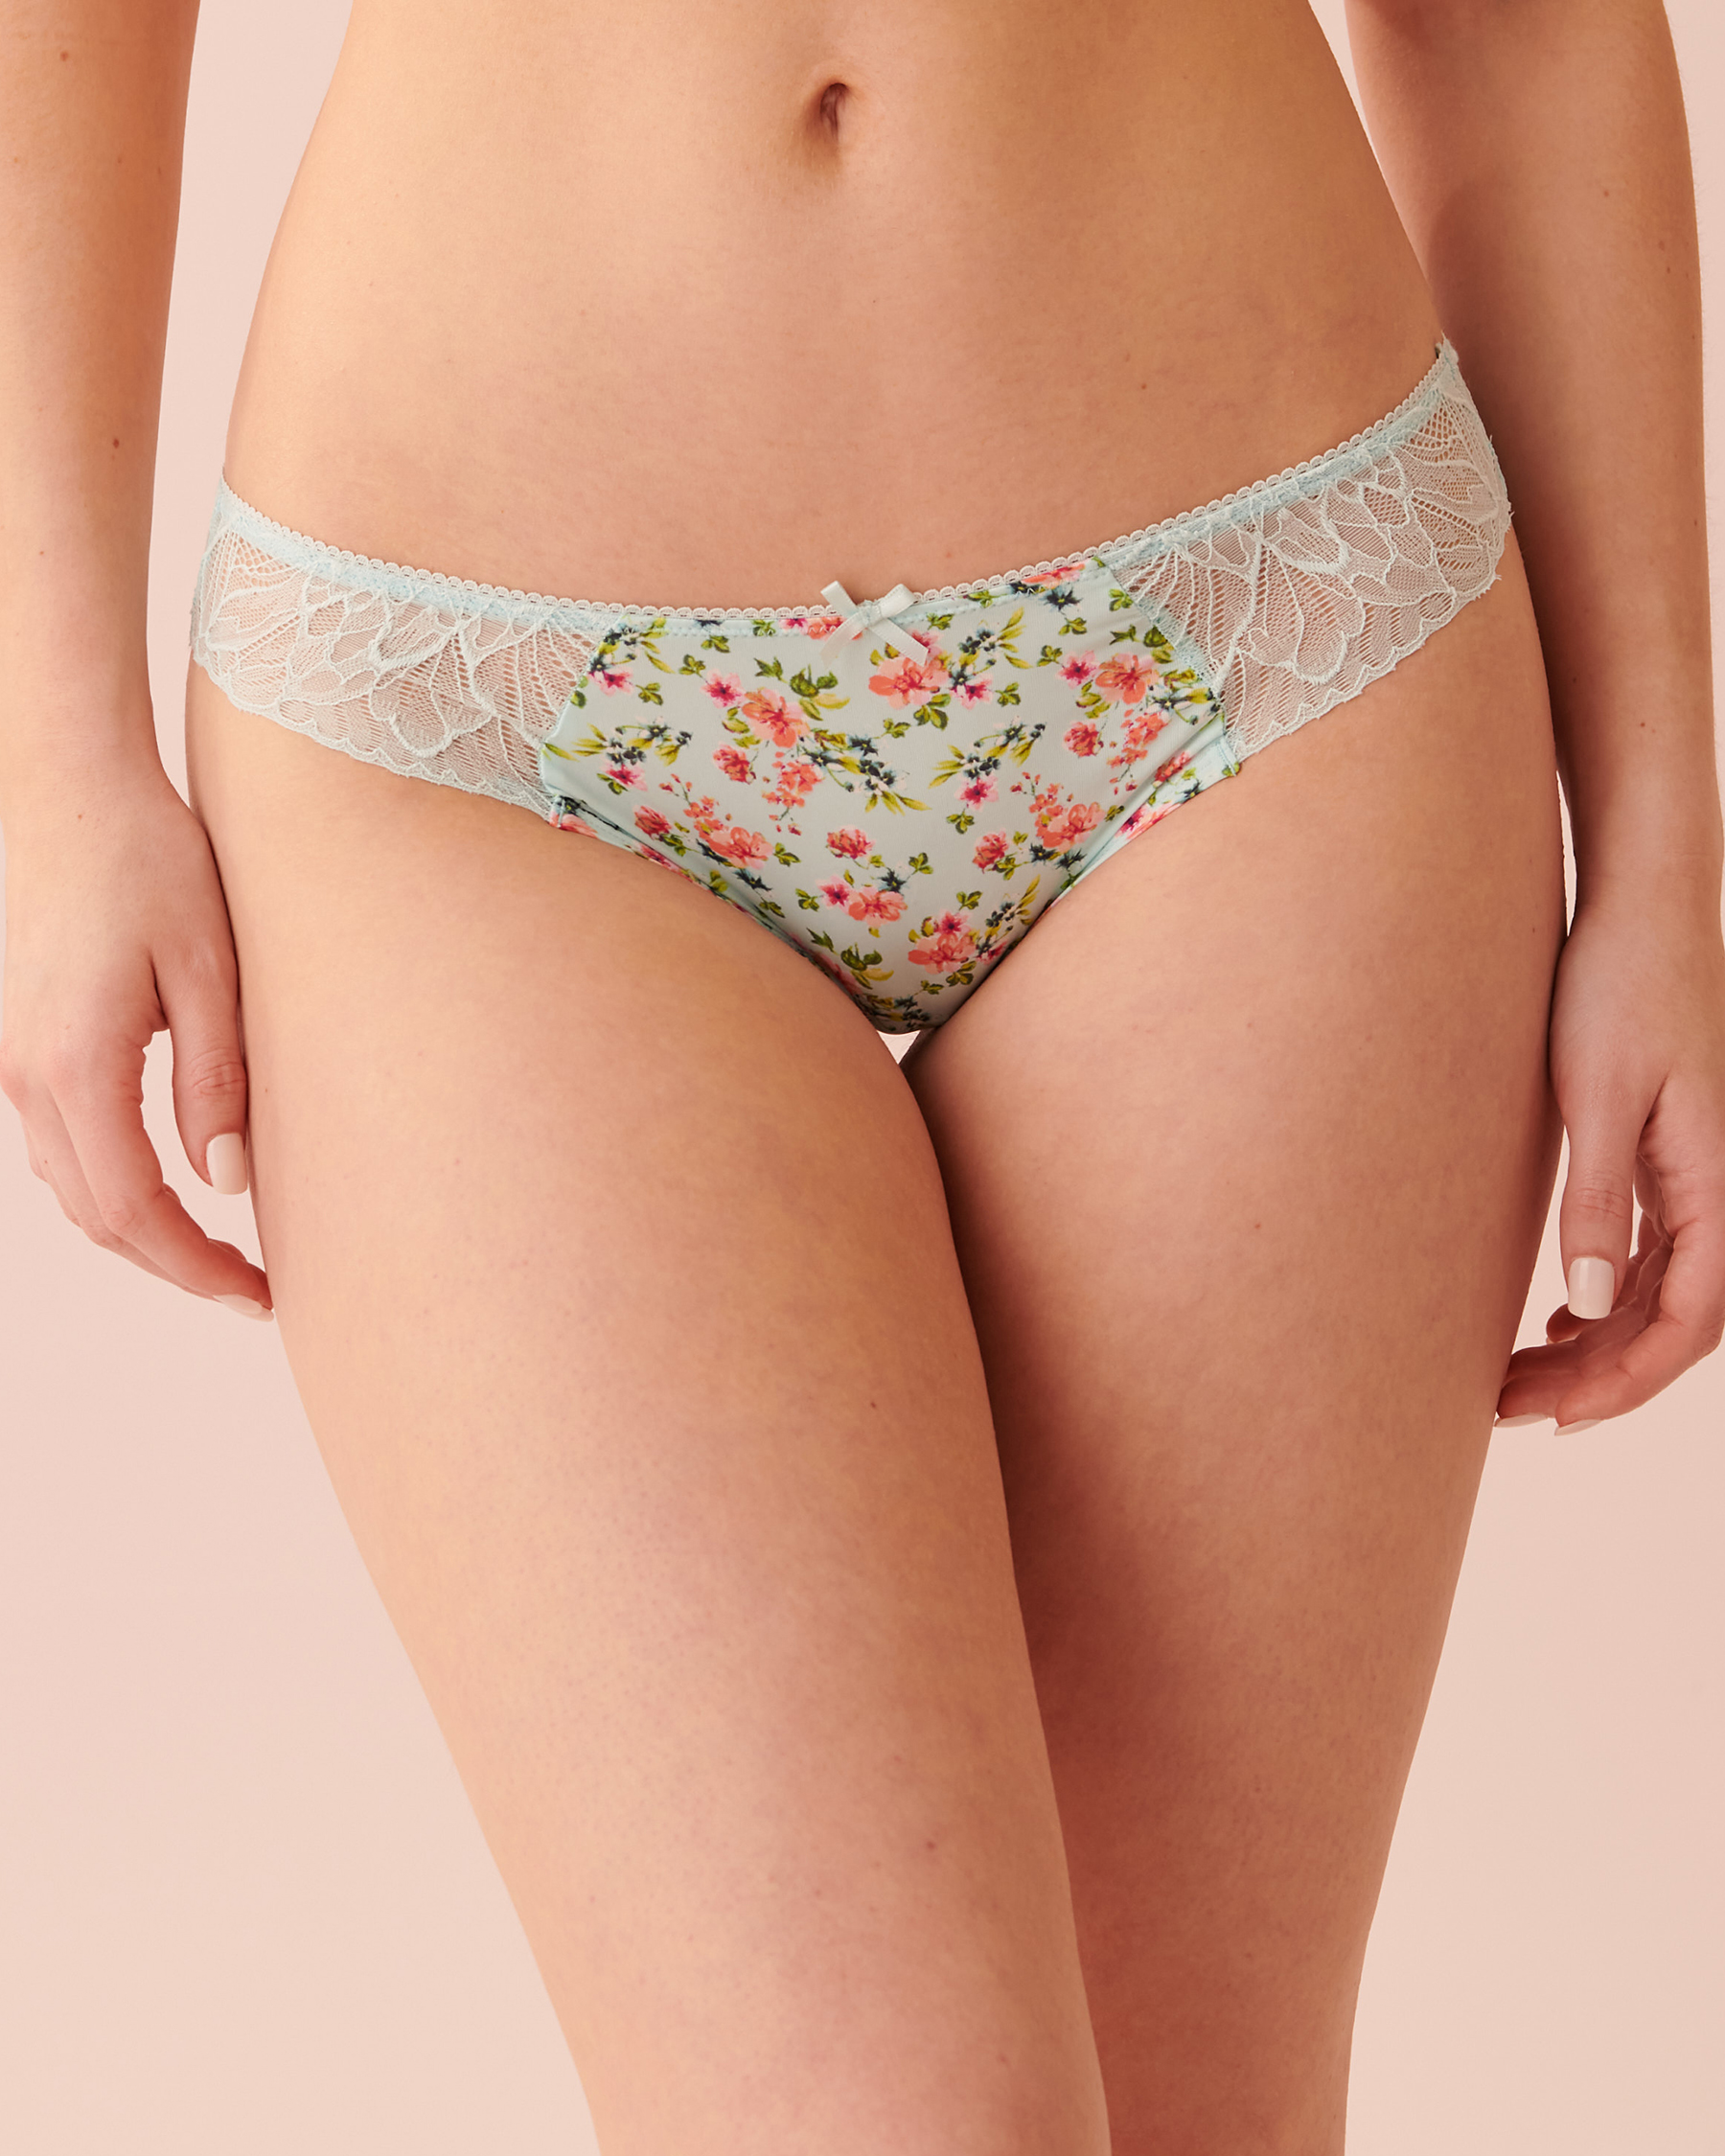 LA VIE EN ROSE Microfiber and Lace Bikini Panty Angelic floral 20200330 - View1